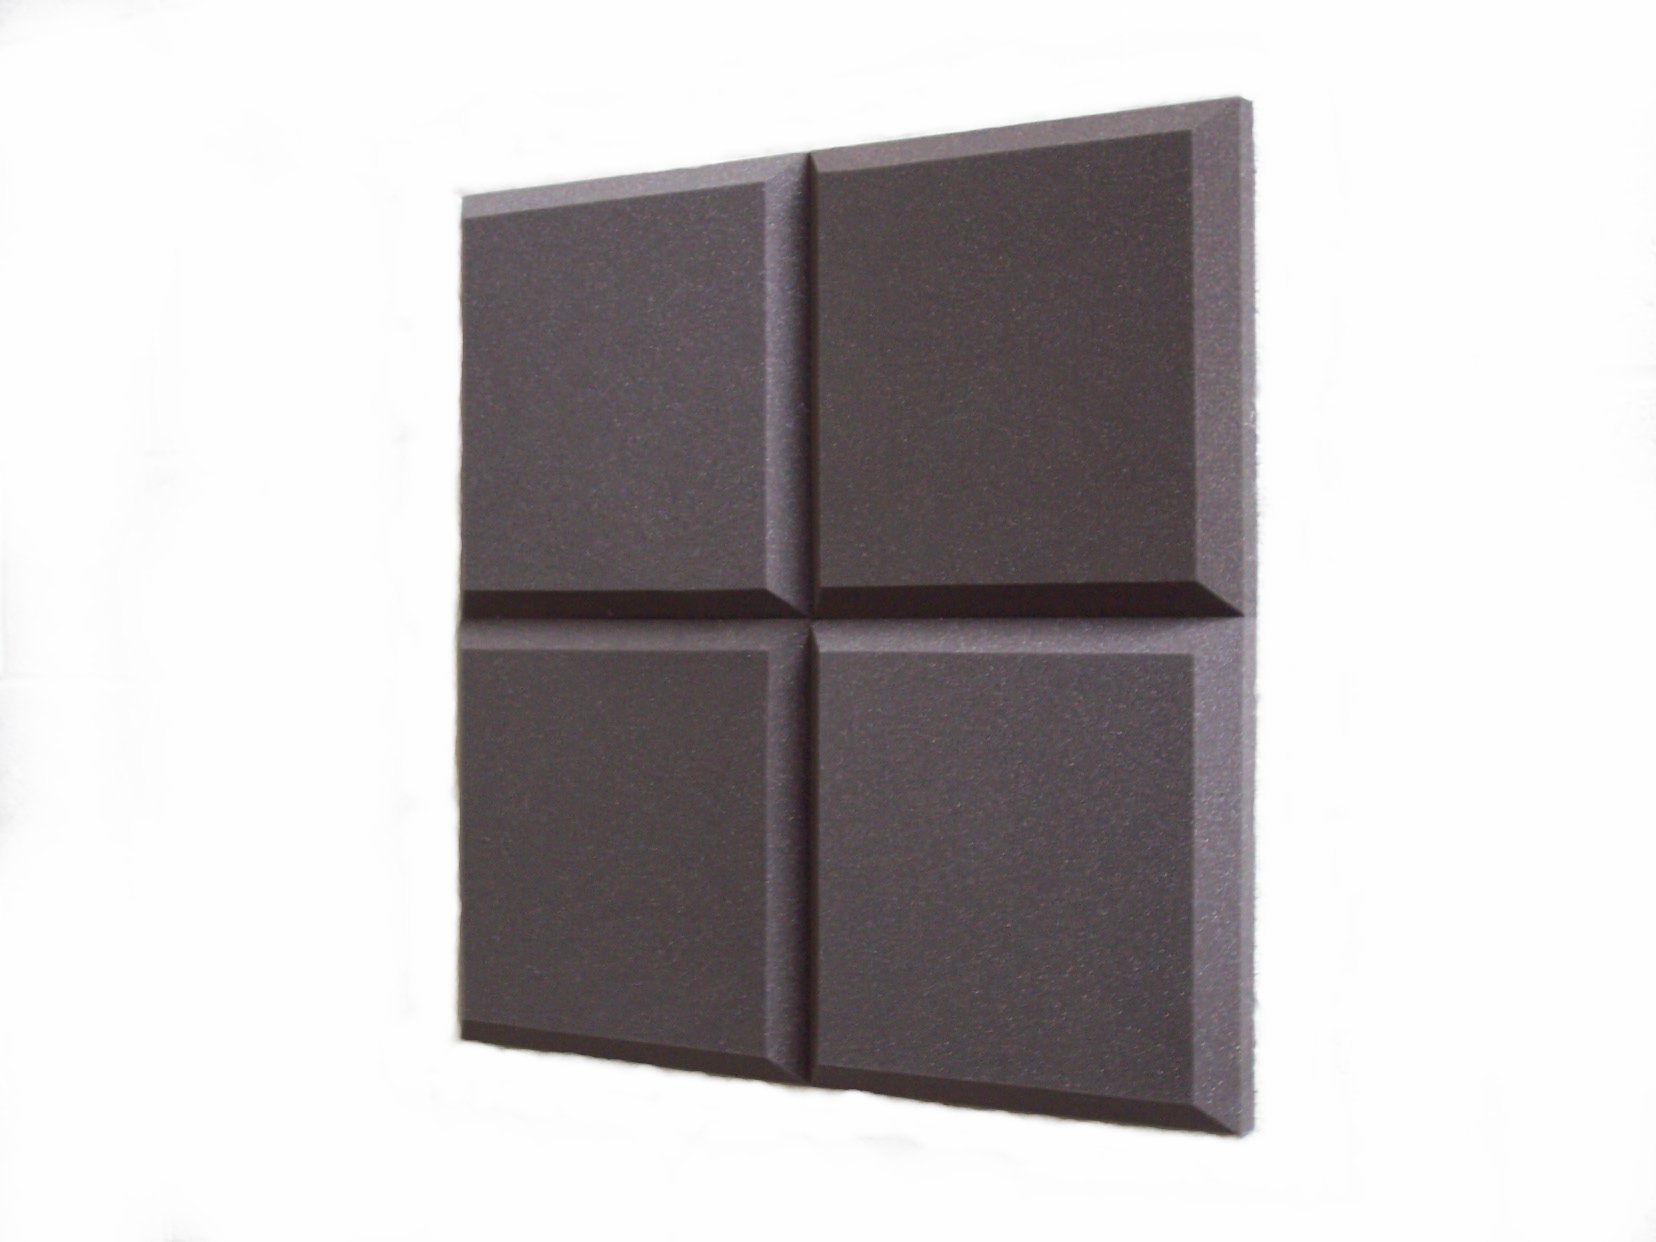 nest of four 2” (50mm) Tegular sound absorbing tiles for studios